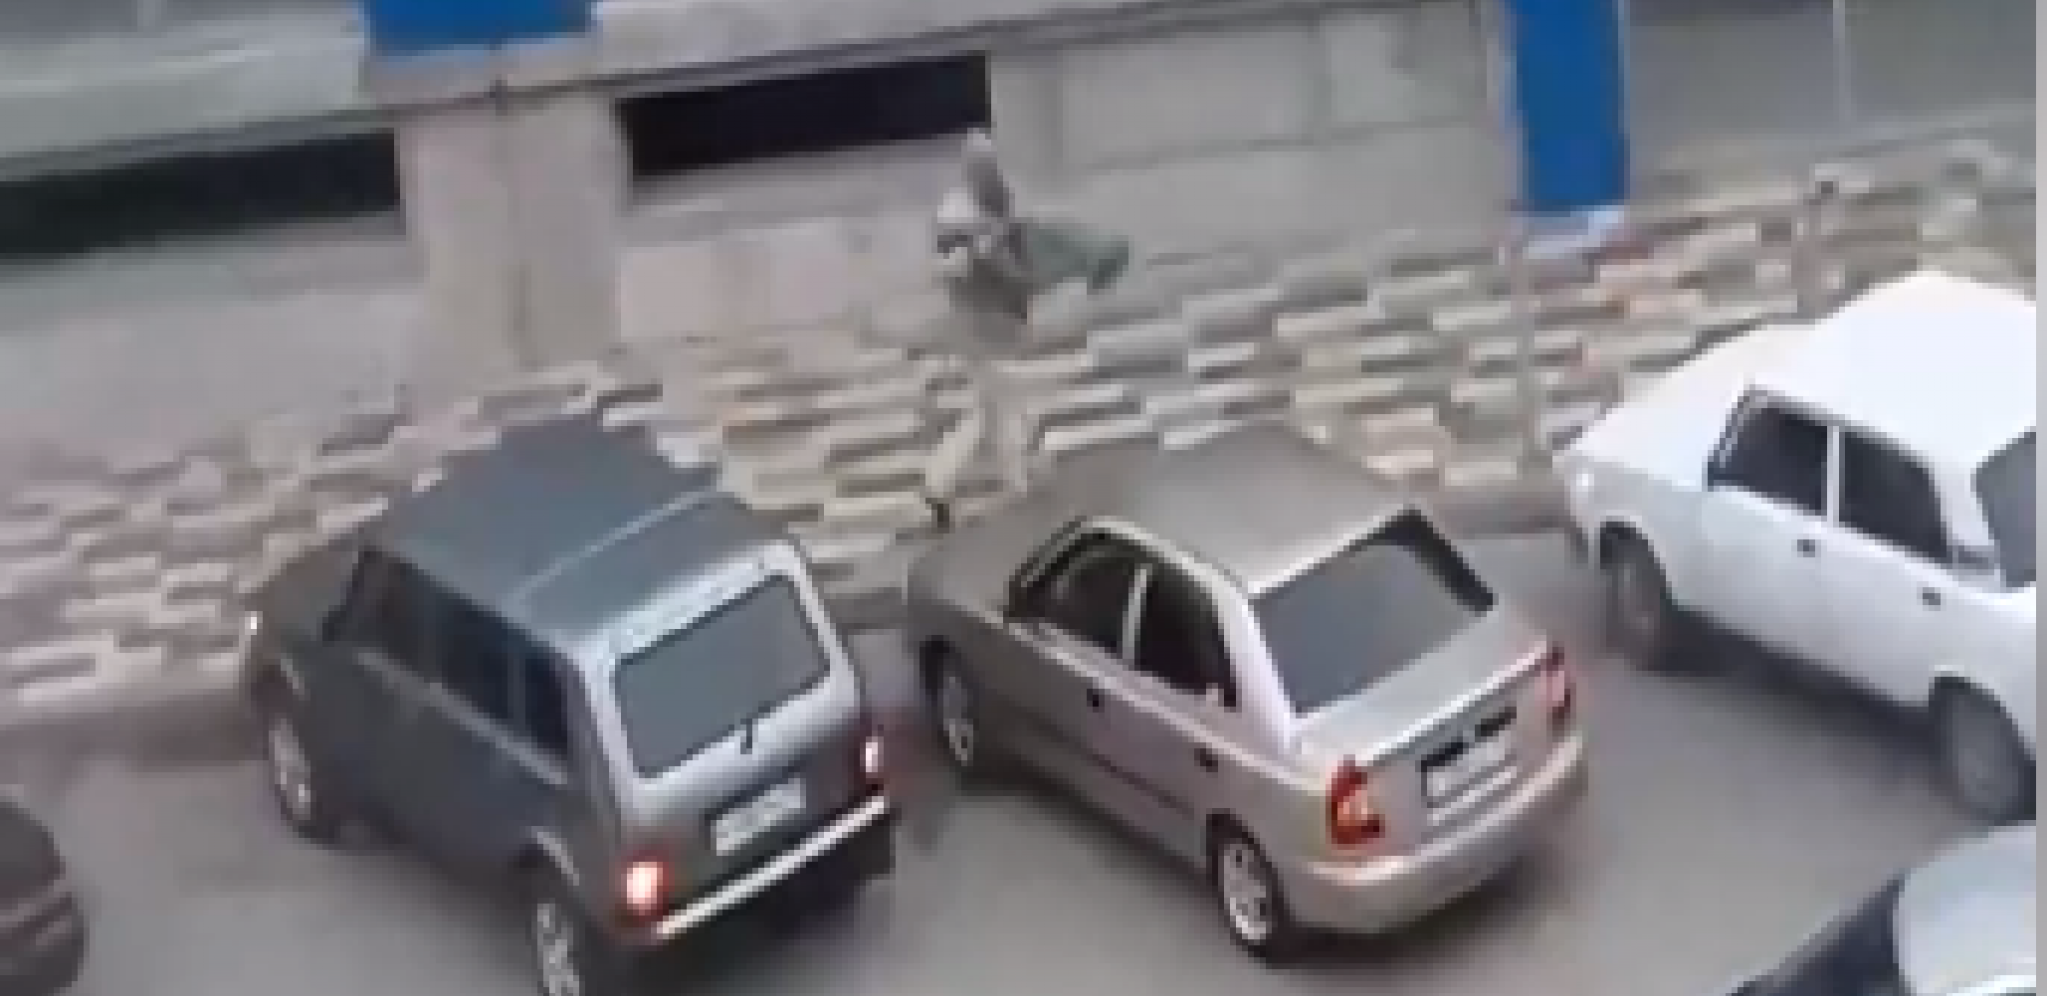 HOROR SNIMAK IZ RUSIJE! Muškarac zverski ubija ljude nasred ulice (UZNEMIRUJUĆI VIDEO)